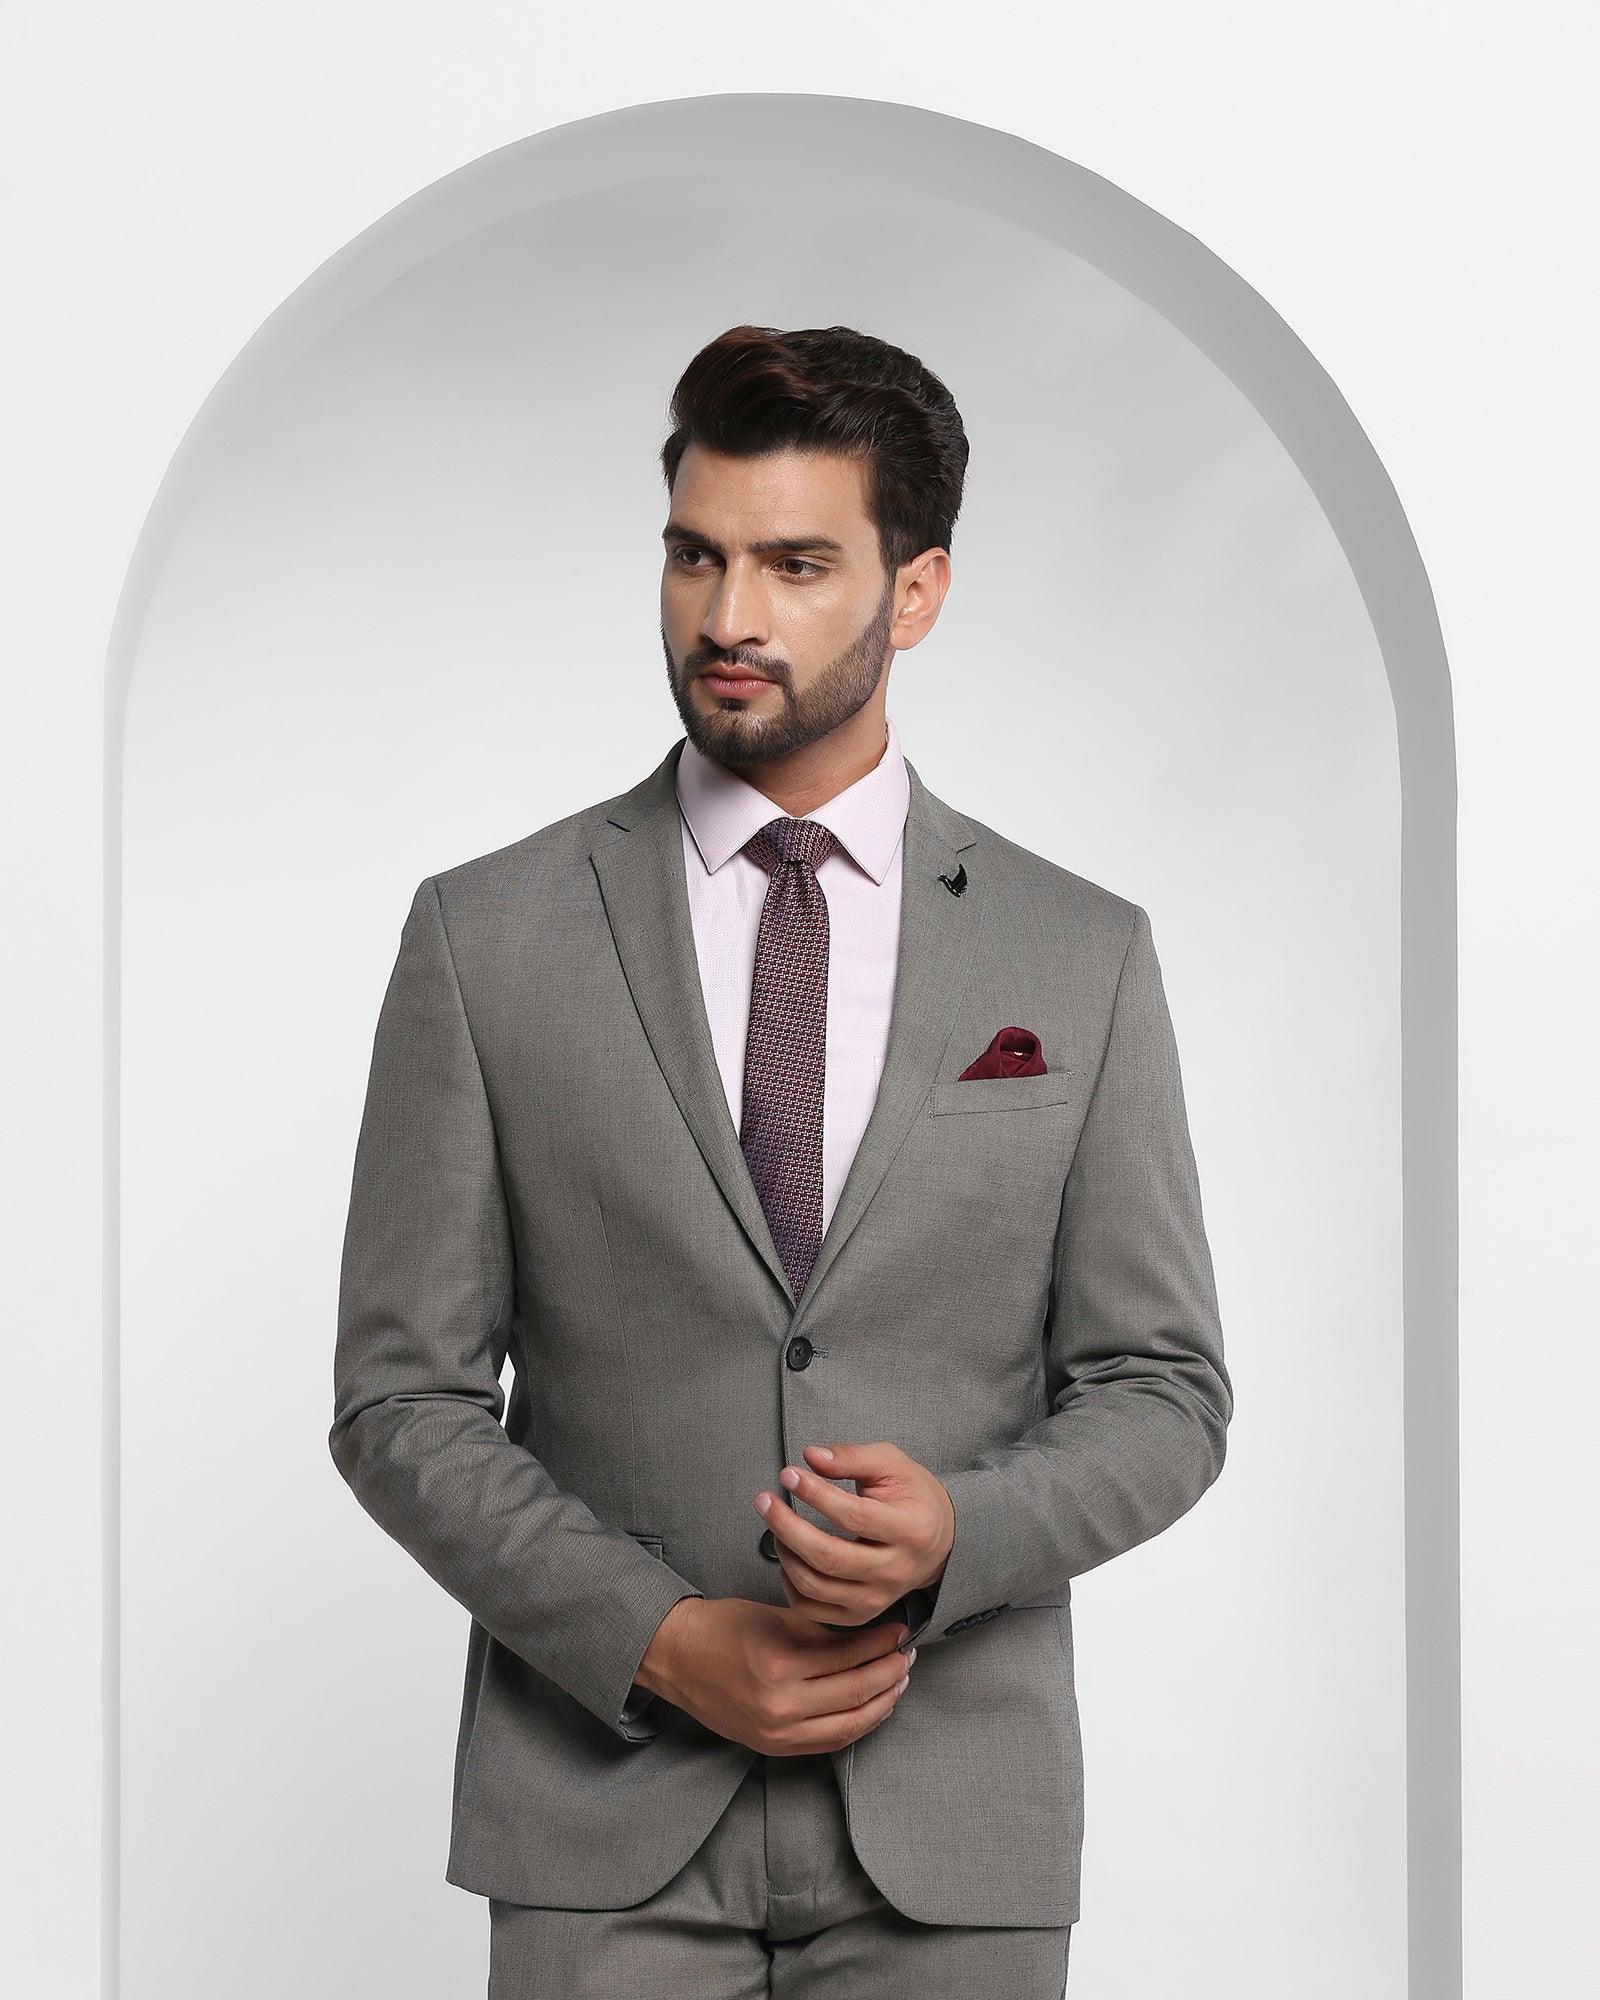 Men's Suit Colors - Blue Vs. Gray Vs. Black Suits - Which Is The Most  Versatile Suit?